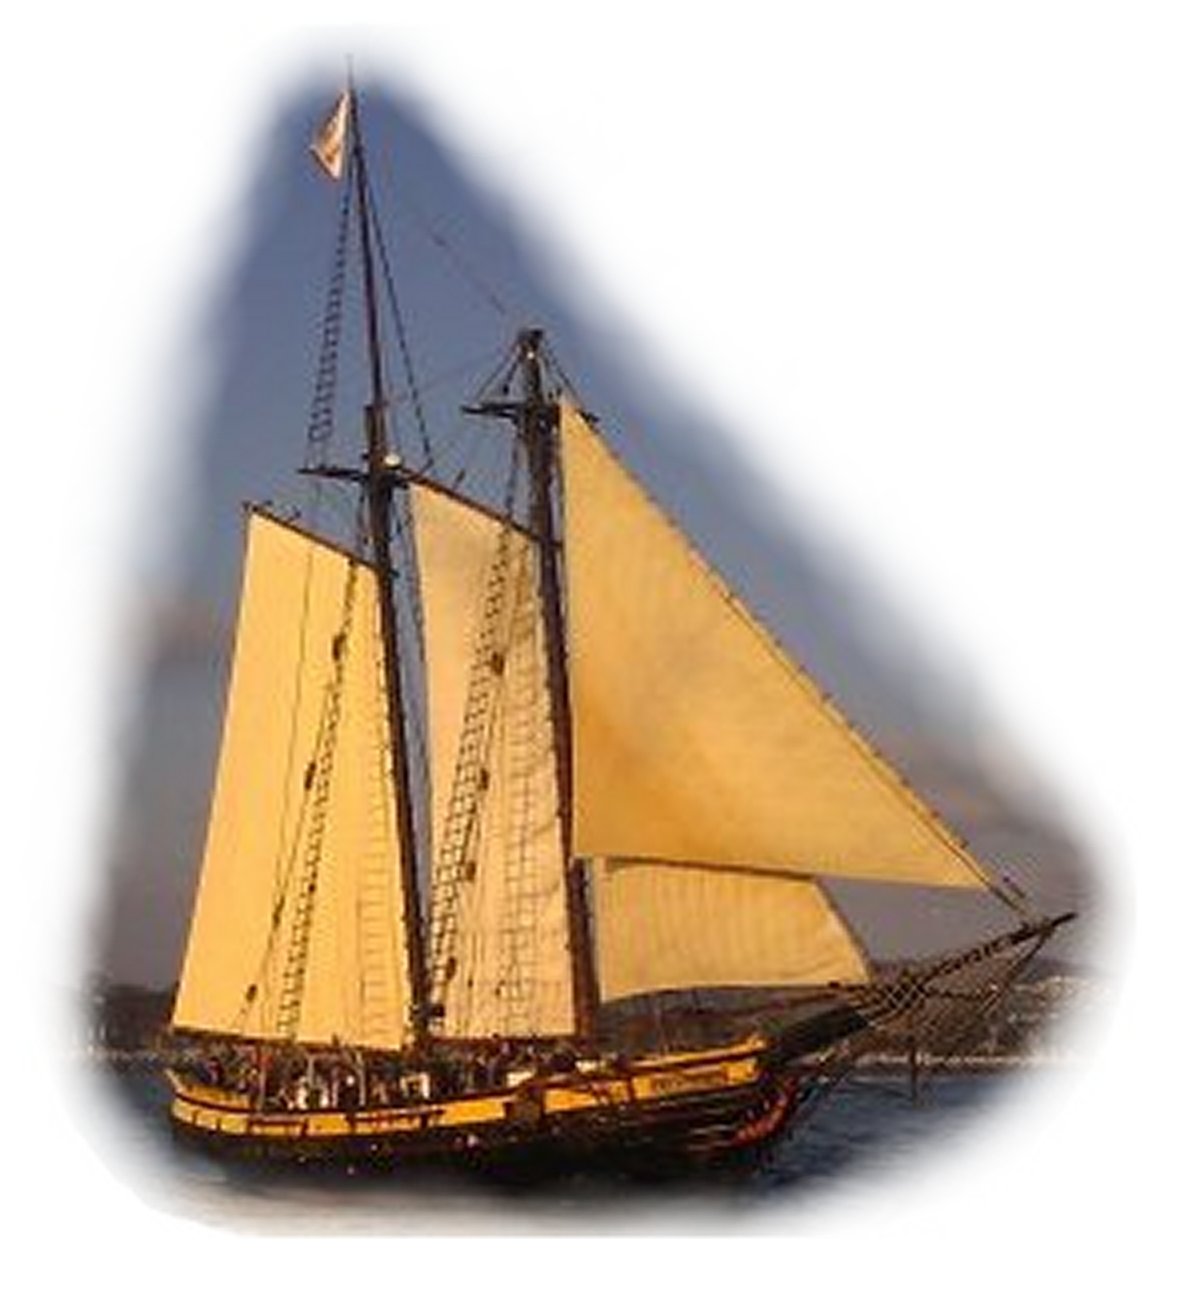 Sailing ship Spirit of Dana Point